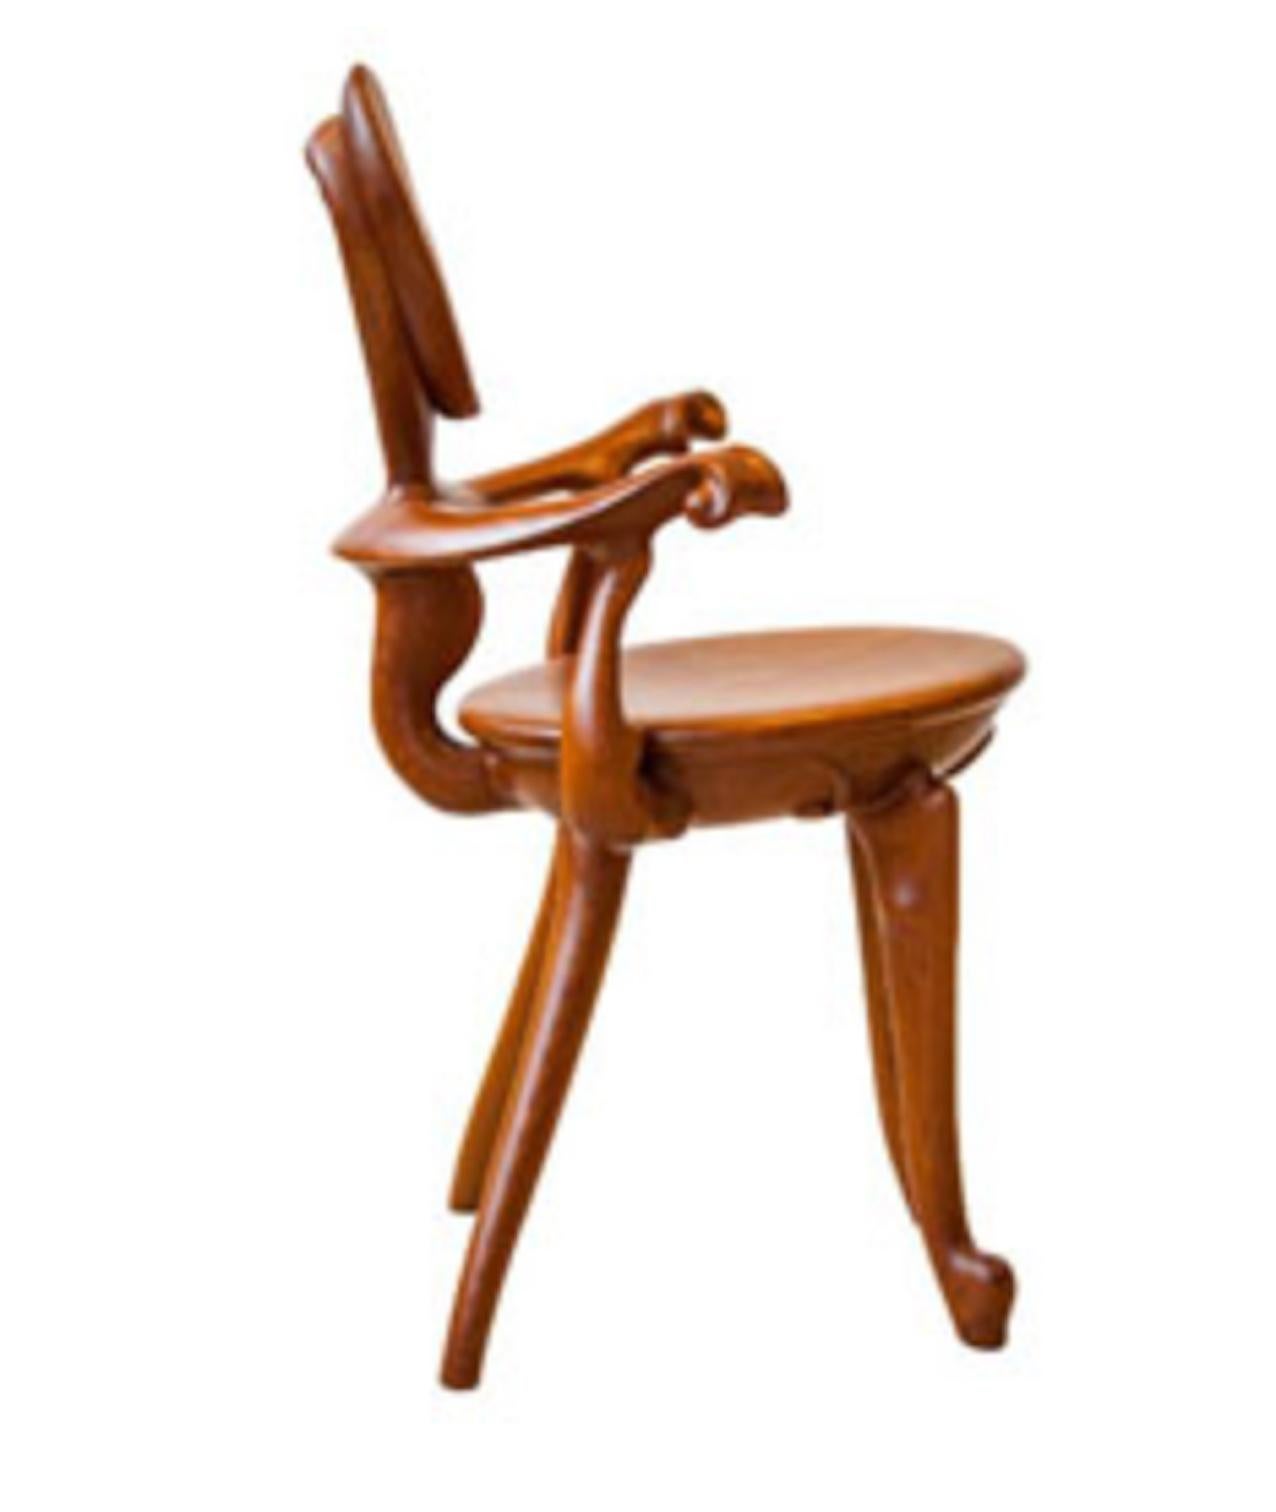 gaudi chair design